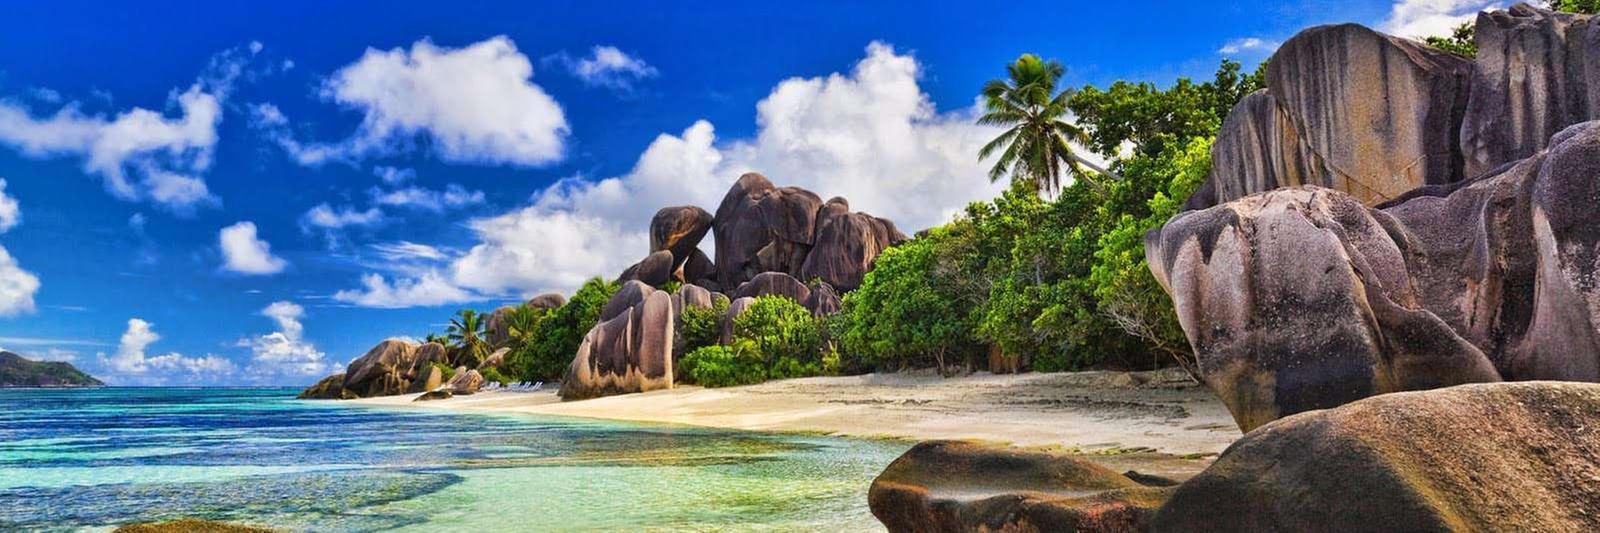 Tipy na výlety na Seychelách